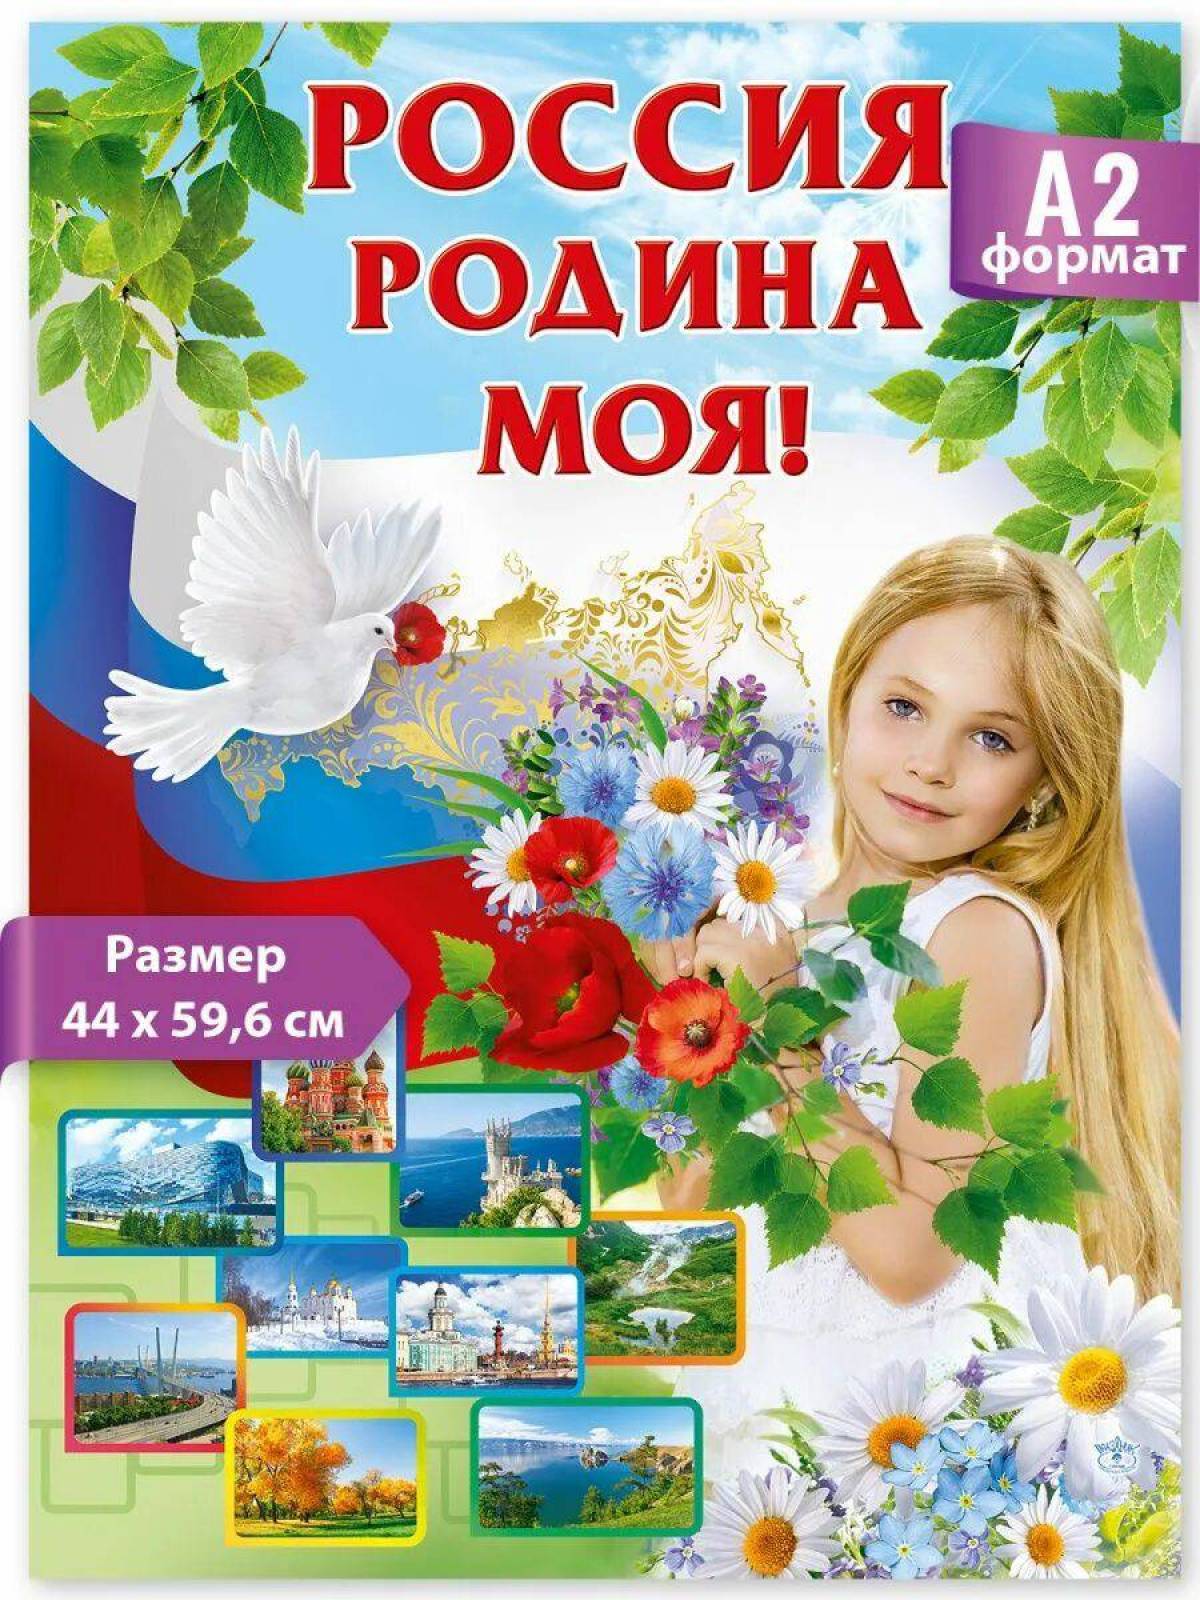 О россии и родине для детей #22